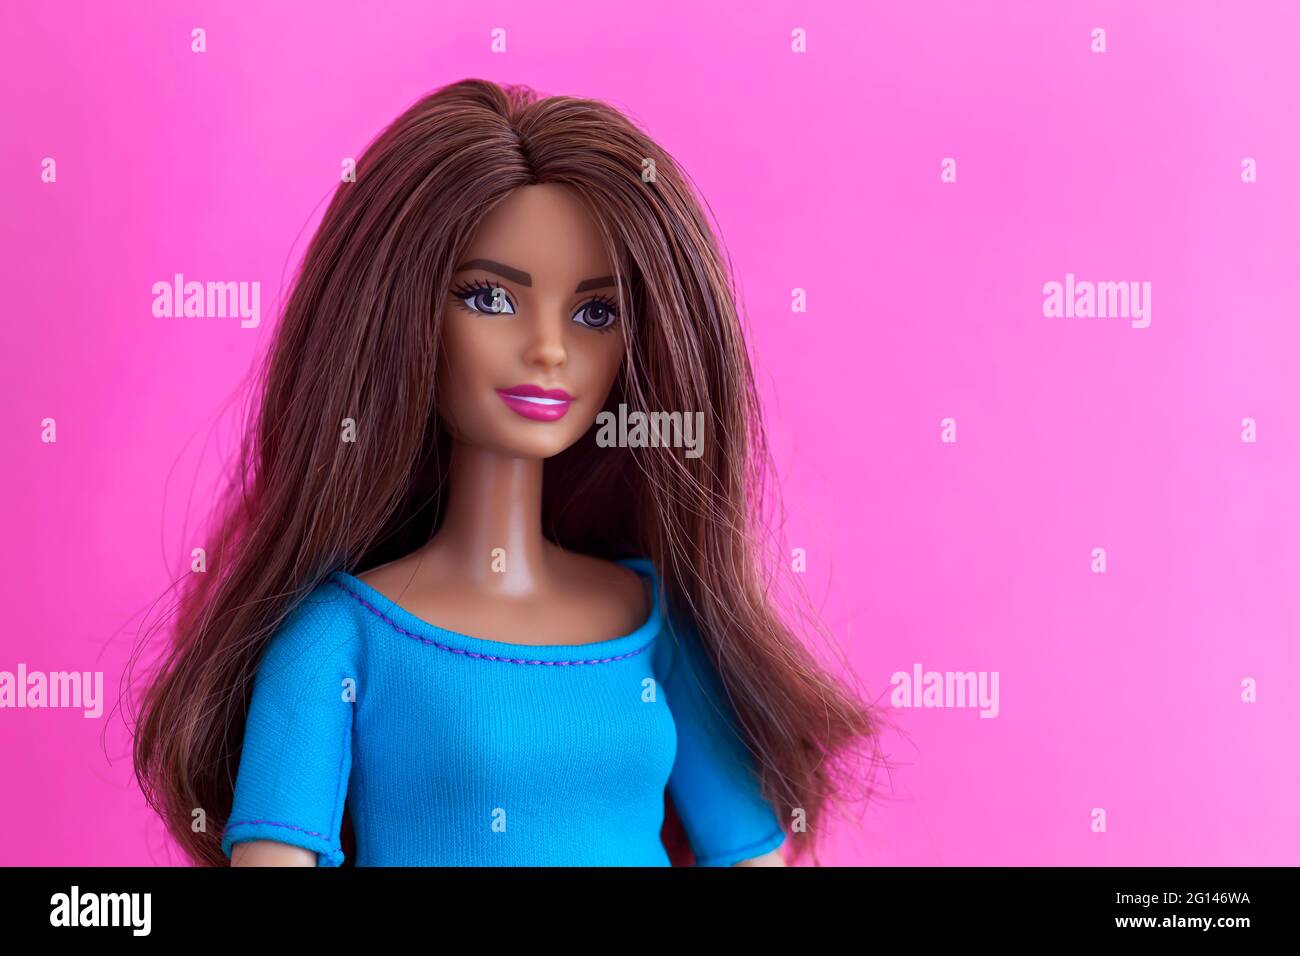 Tambow, Russische Föderation - 27. November 2018 Porträt einer brünetten Barbie-Puppe vor einem magentafarbenen Hintergrund. Stockfoto